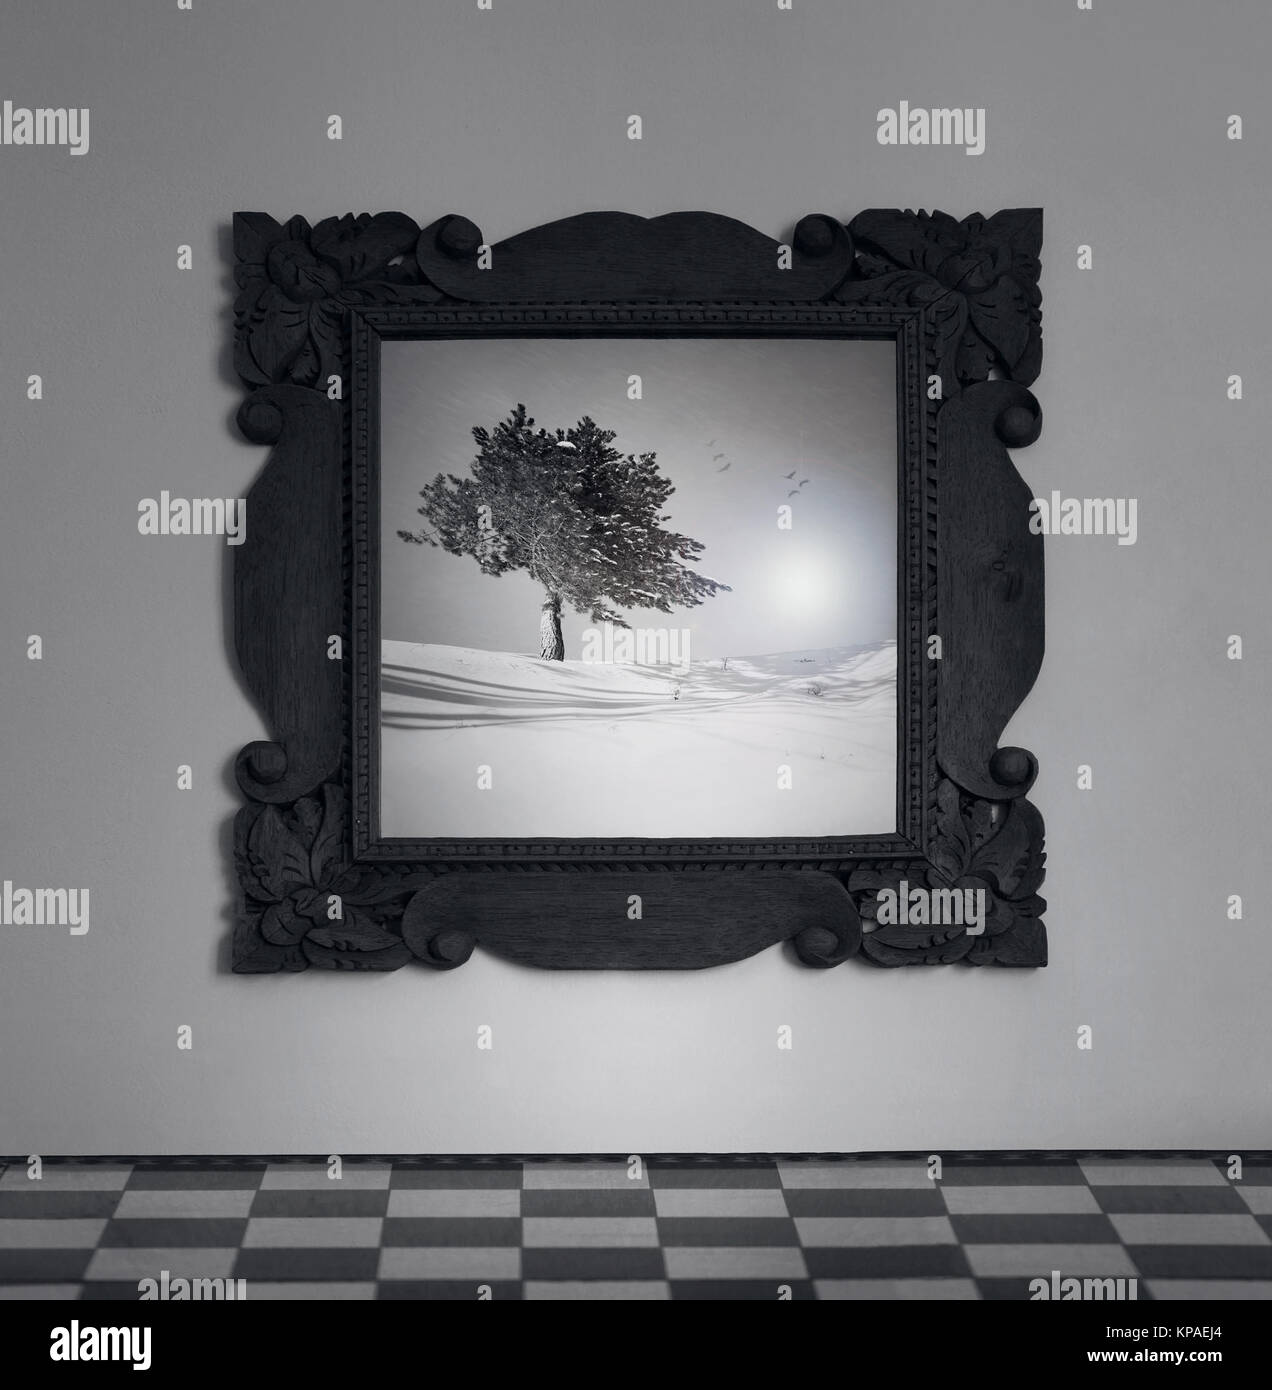 Dettaglio di un telaio specchio sulla parete con un'immagine di un albero sulla neve in bianco e nero Foto Stock